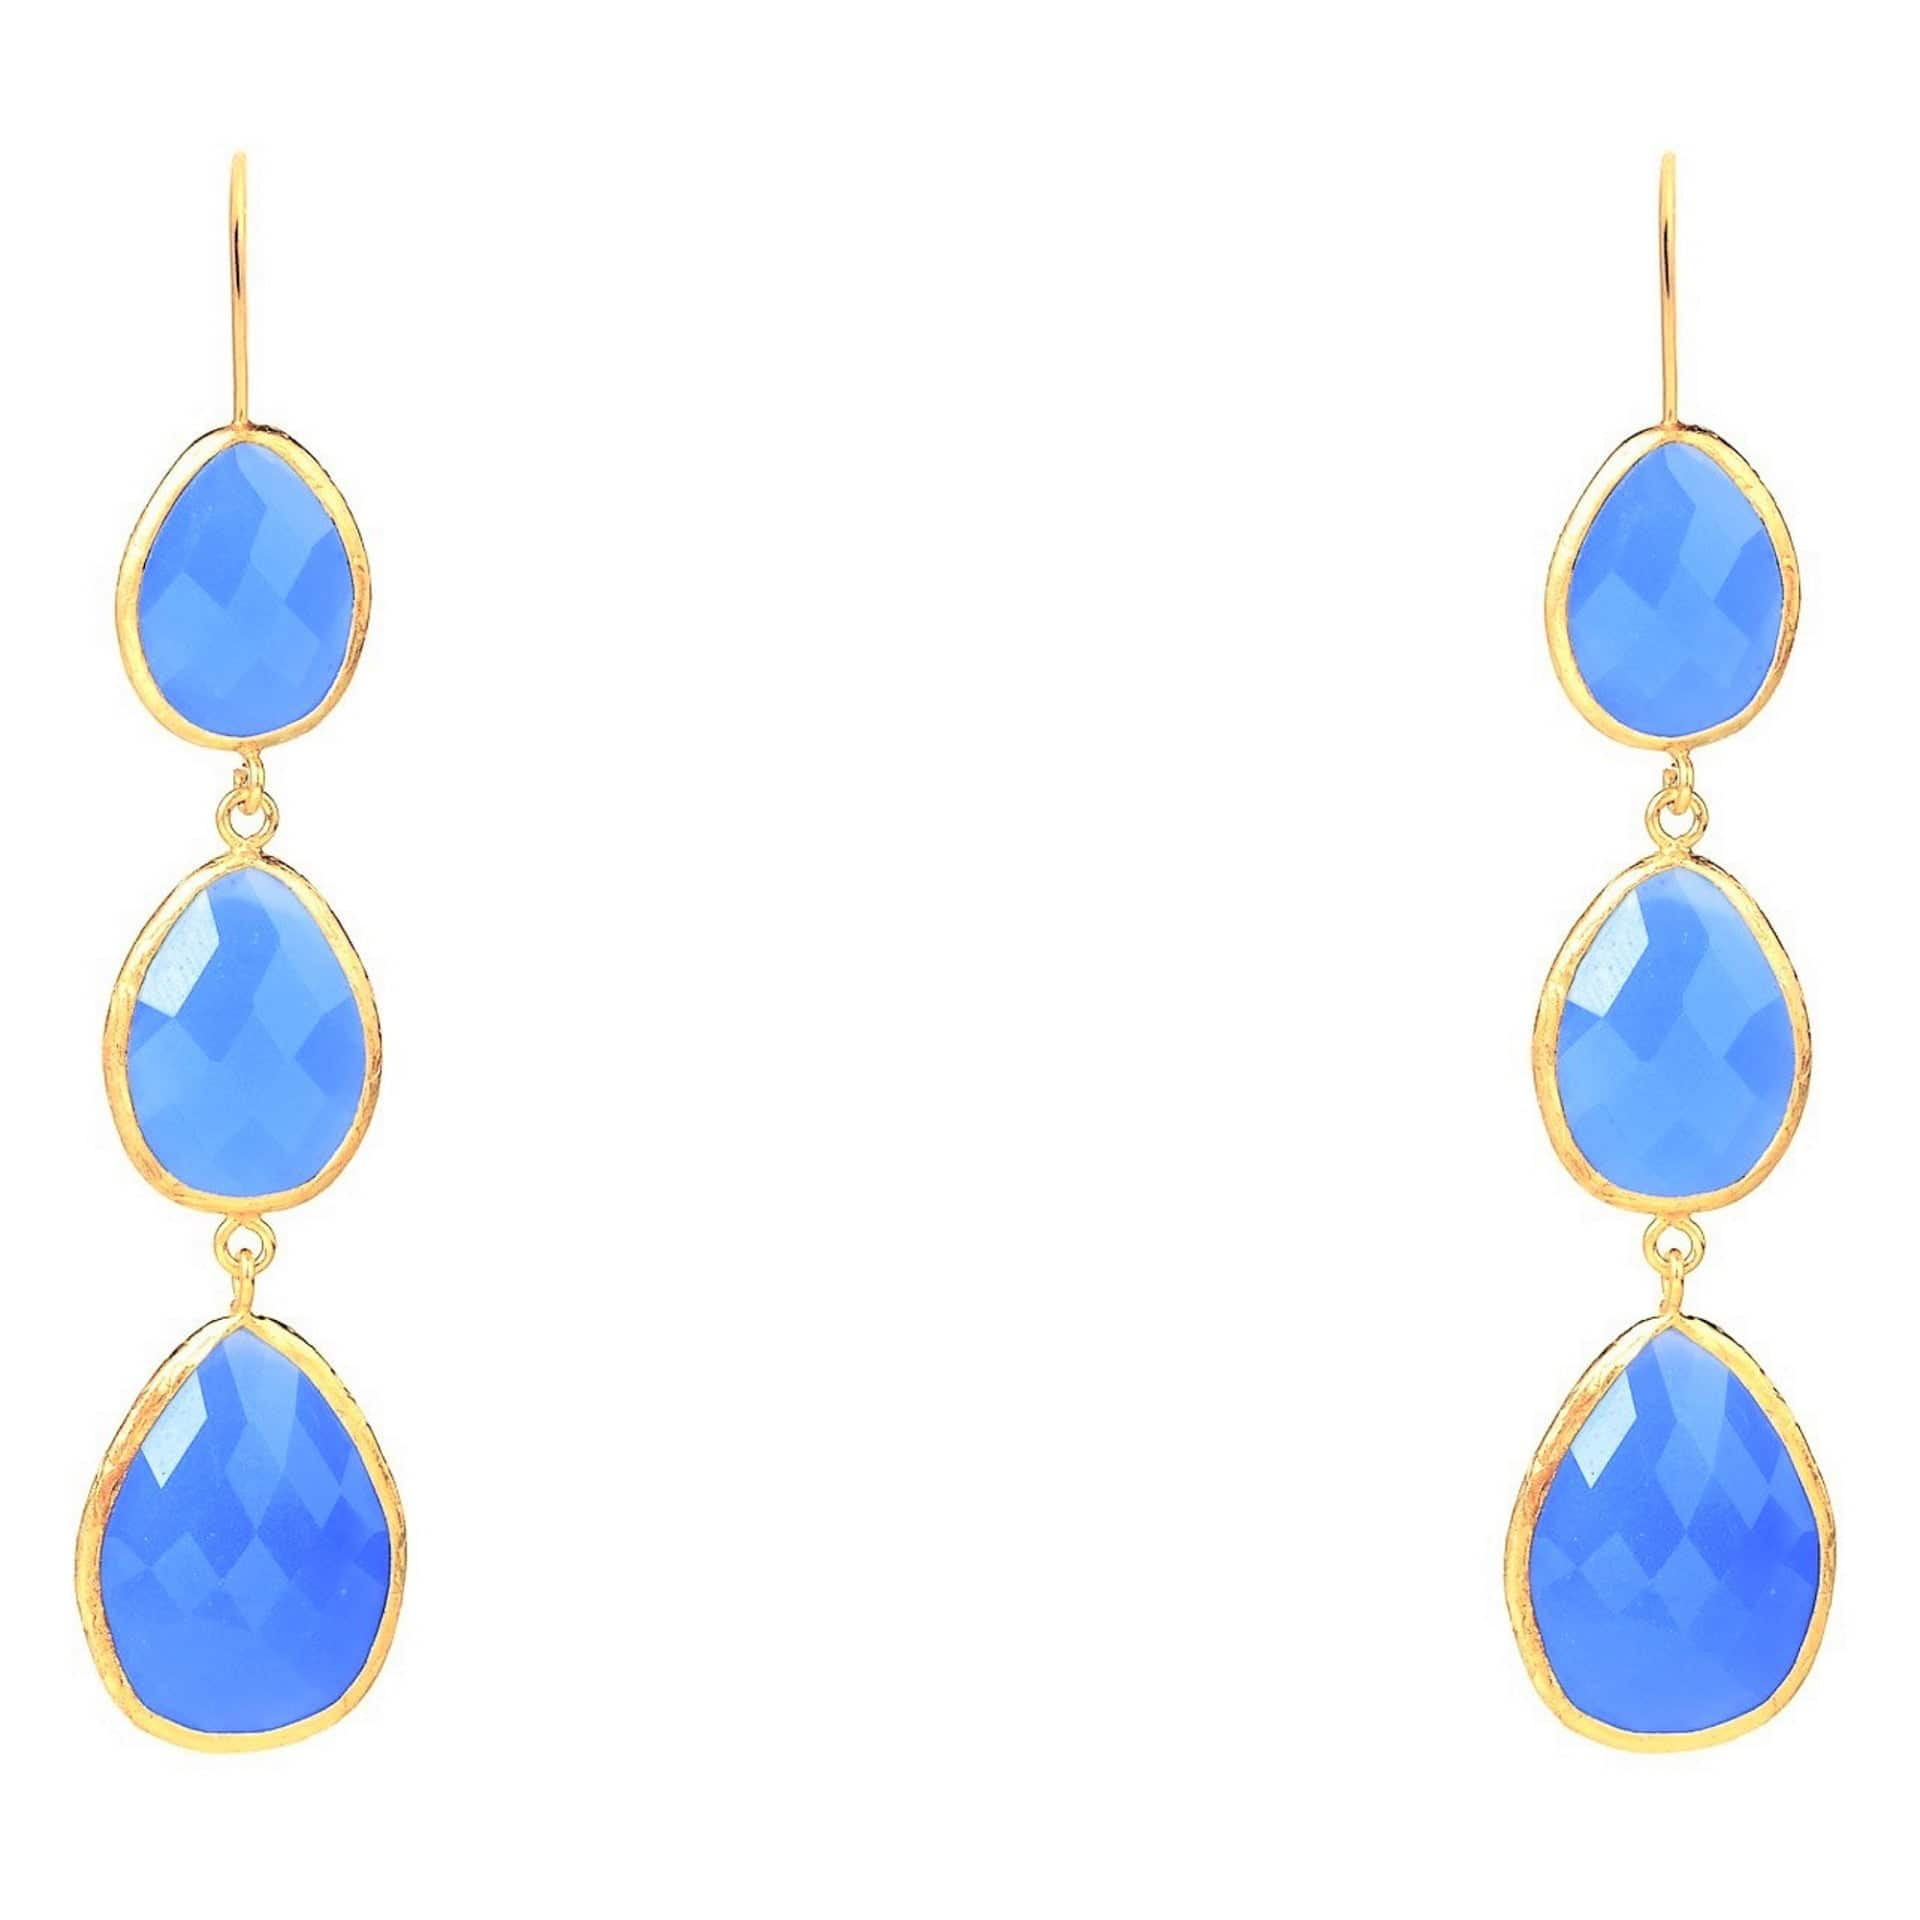 Triple Drop Earrings Dark Blue Chalcedony Gold - LATELITA Earrings